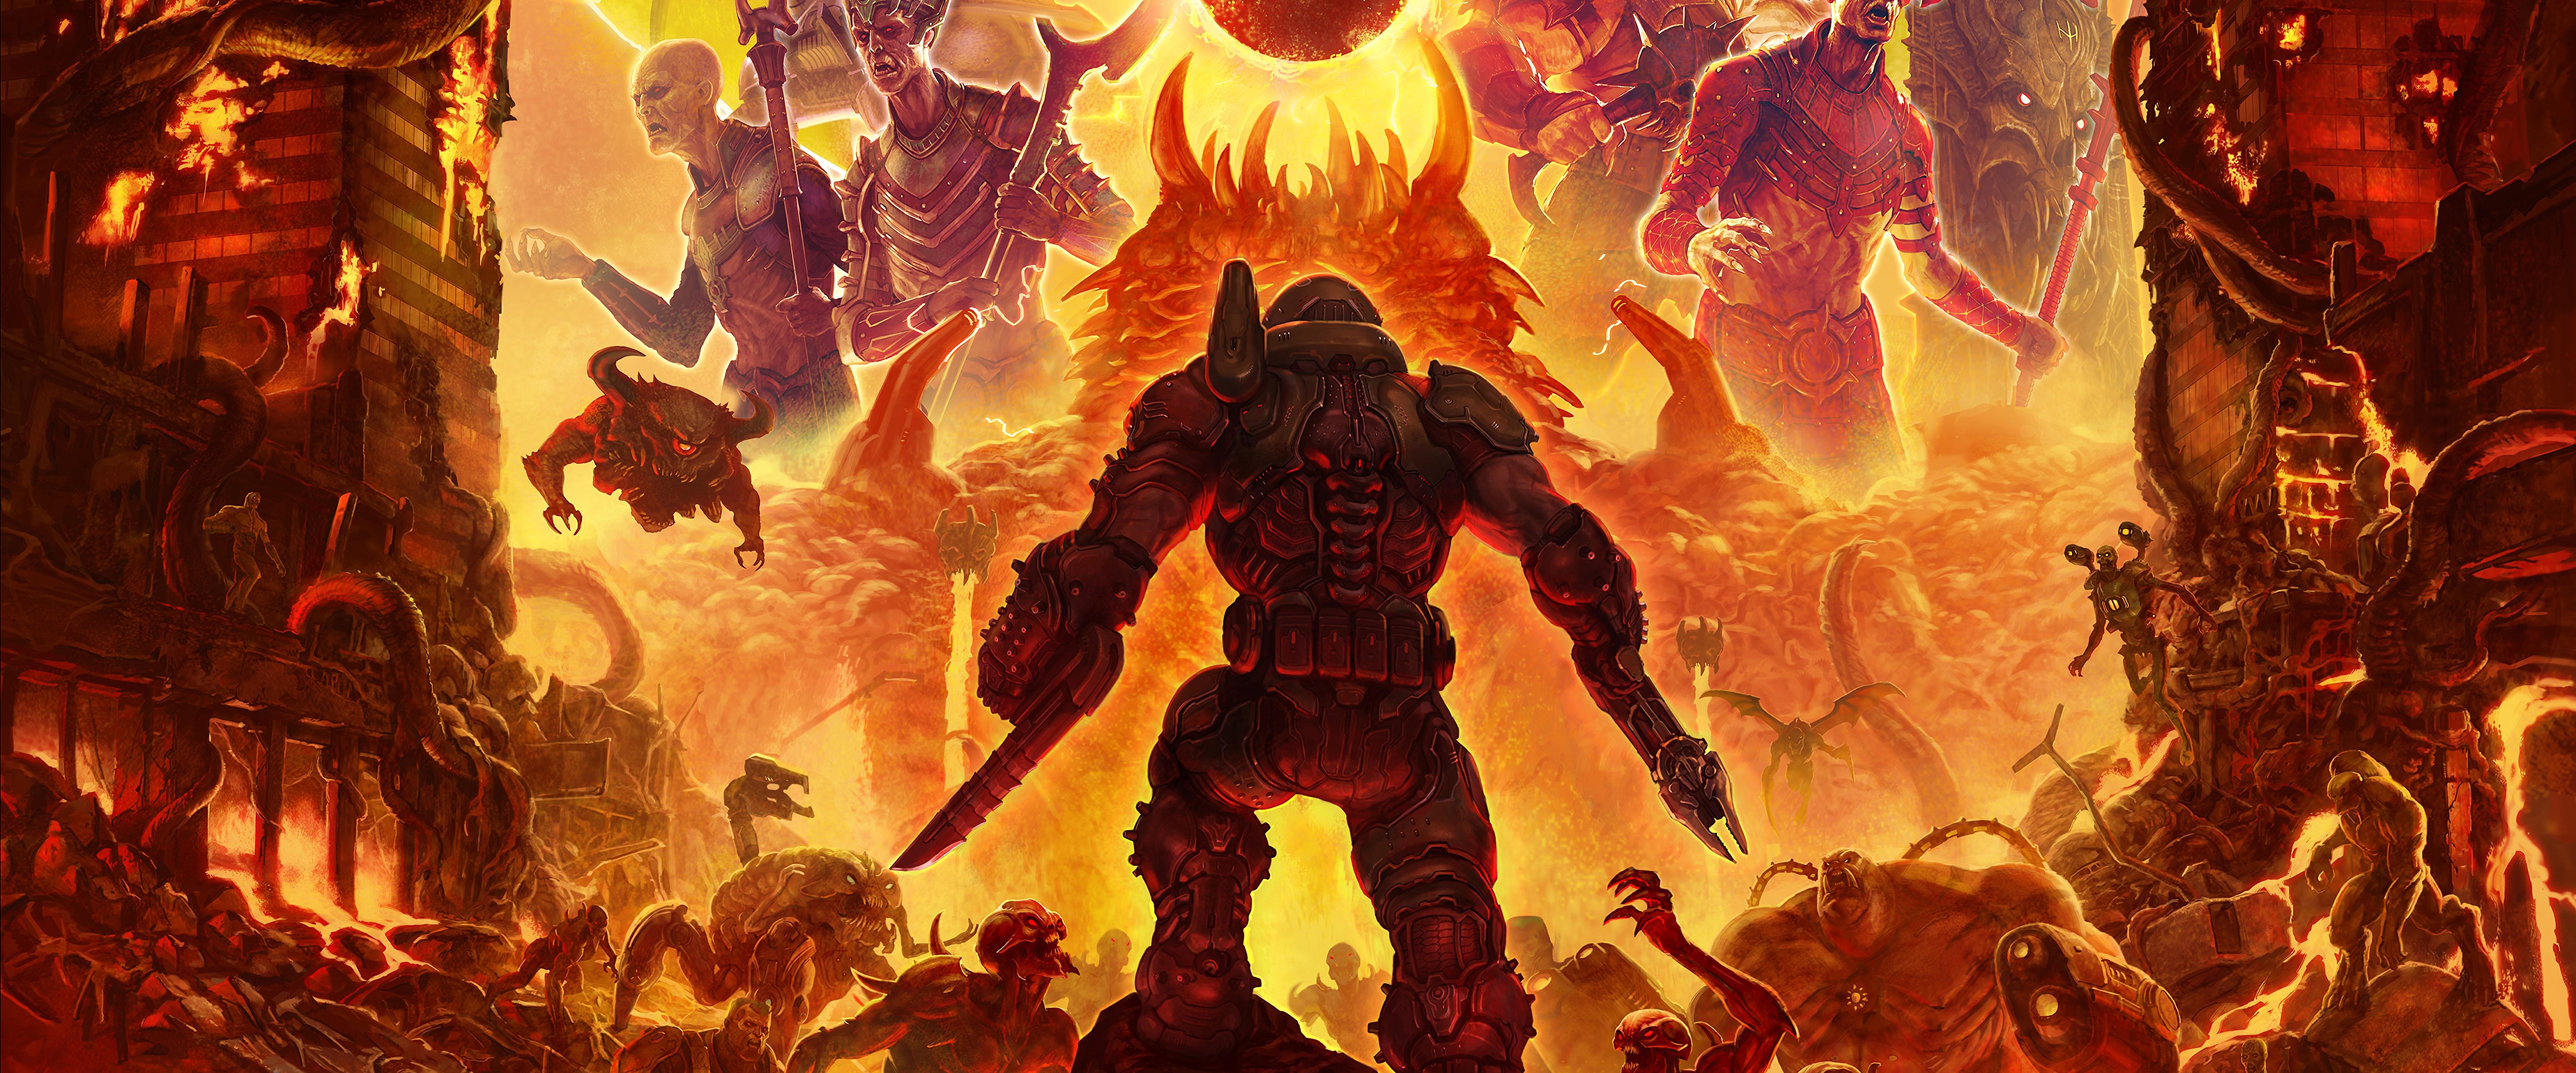 7680 x 3199 · jpeg - Doom Eternal, Poster, Doomguy, Monsters, 8K, #22 Wallpaper